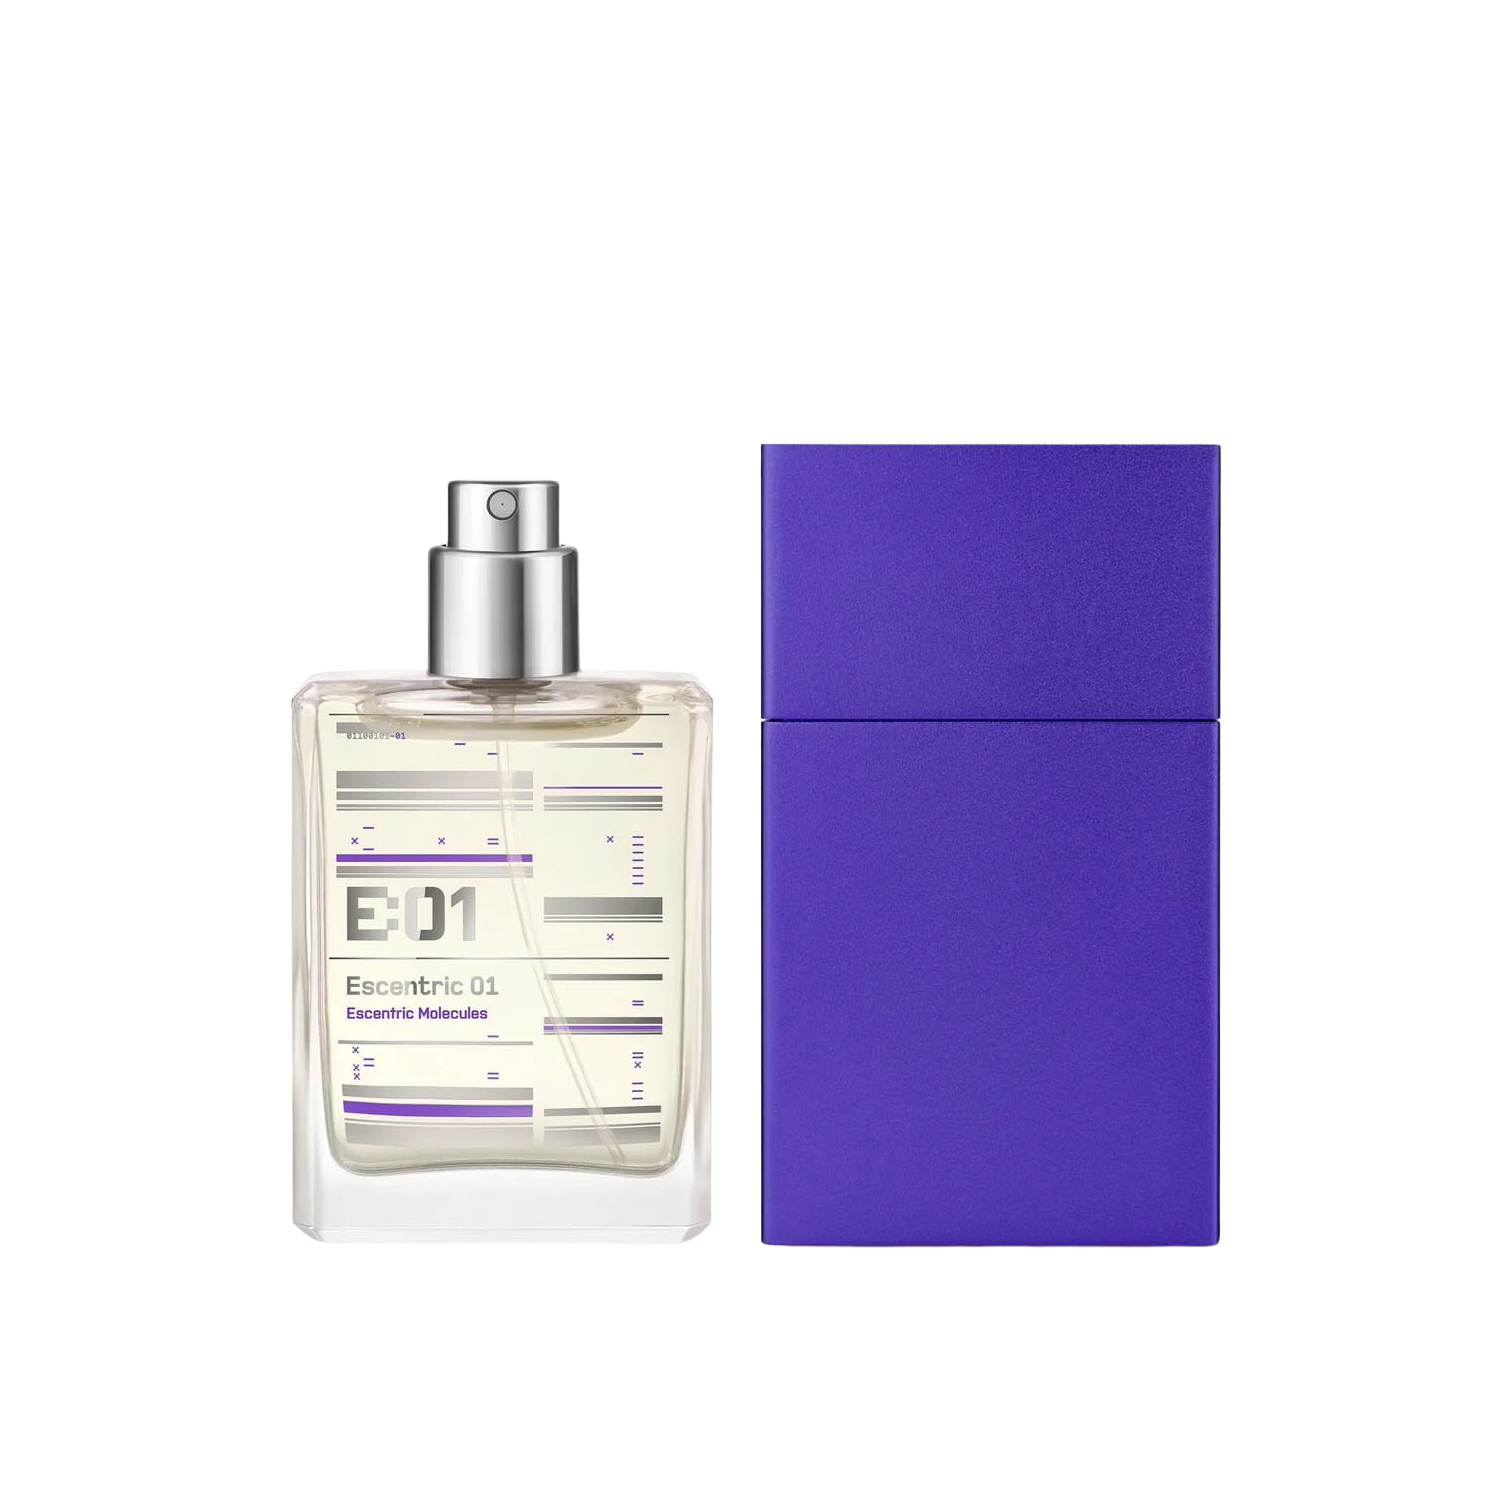 Escentric Molecules Escentric 01 Portable 30ml Perfume Feature